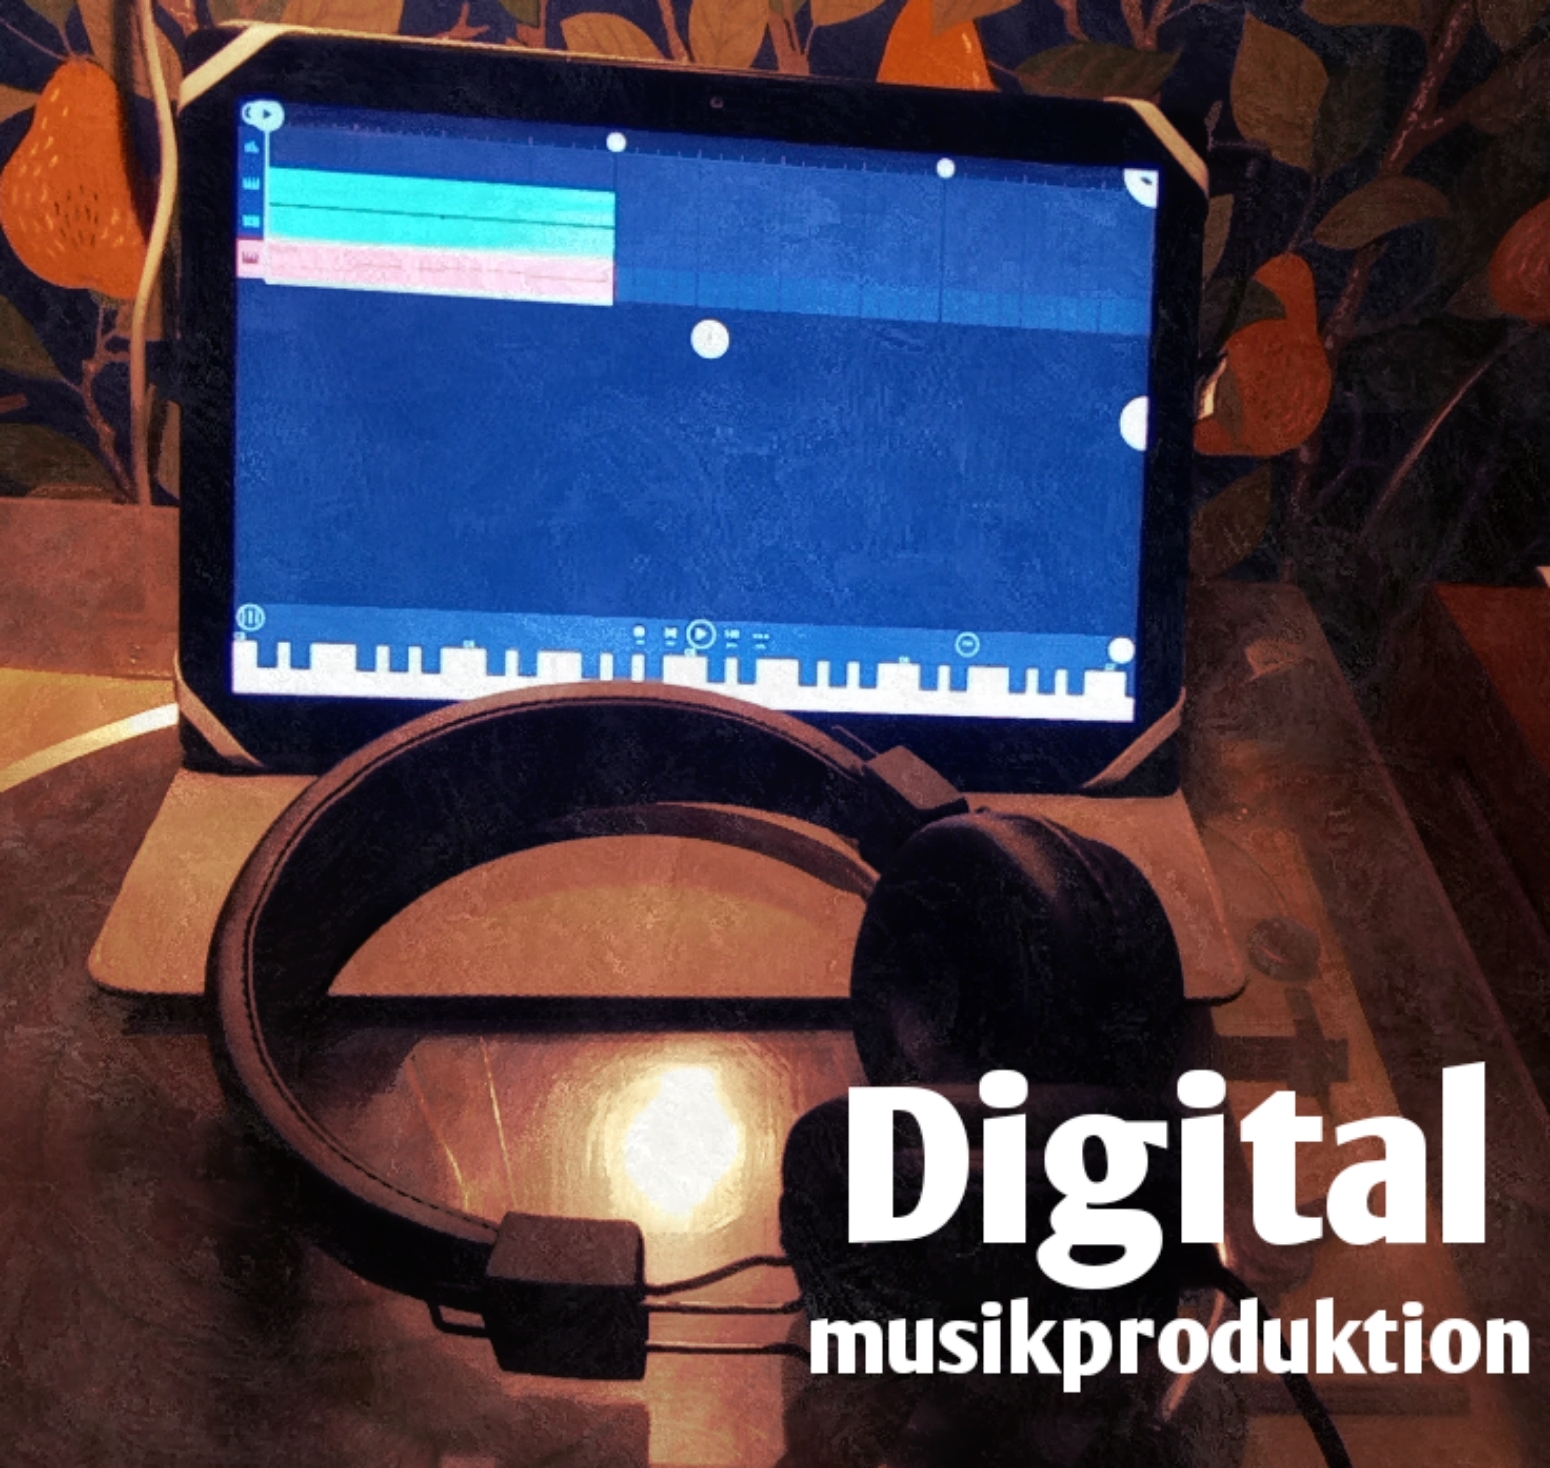 En laptop står uppfälld med ett par hörlurar liggande framför. På skärmen syns pianotangenter. På bilden står det digital musikproduktion.